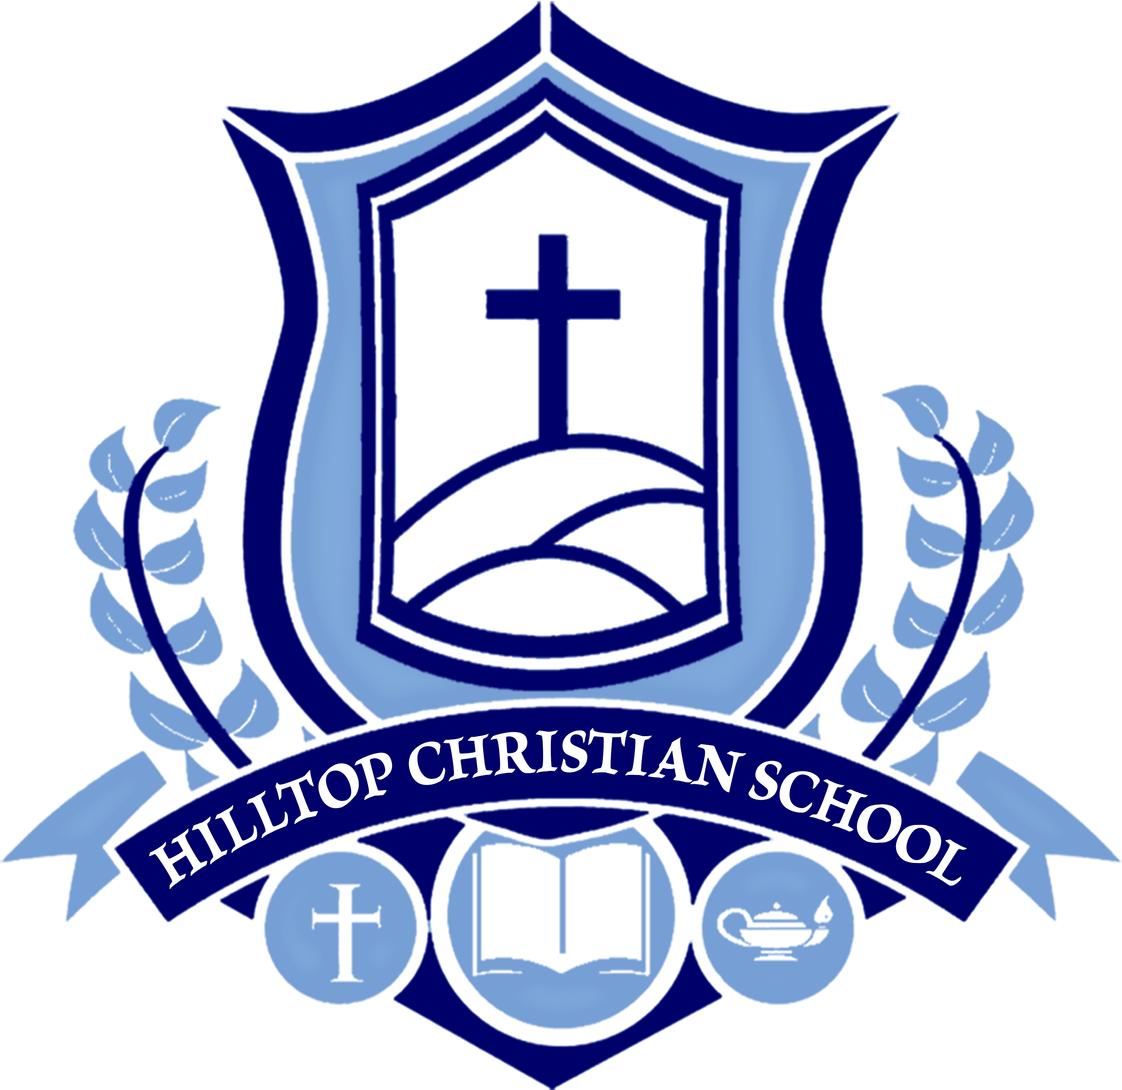 Hilltop Christian School Photo #1 - Hilltop Christian School official crest